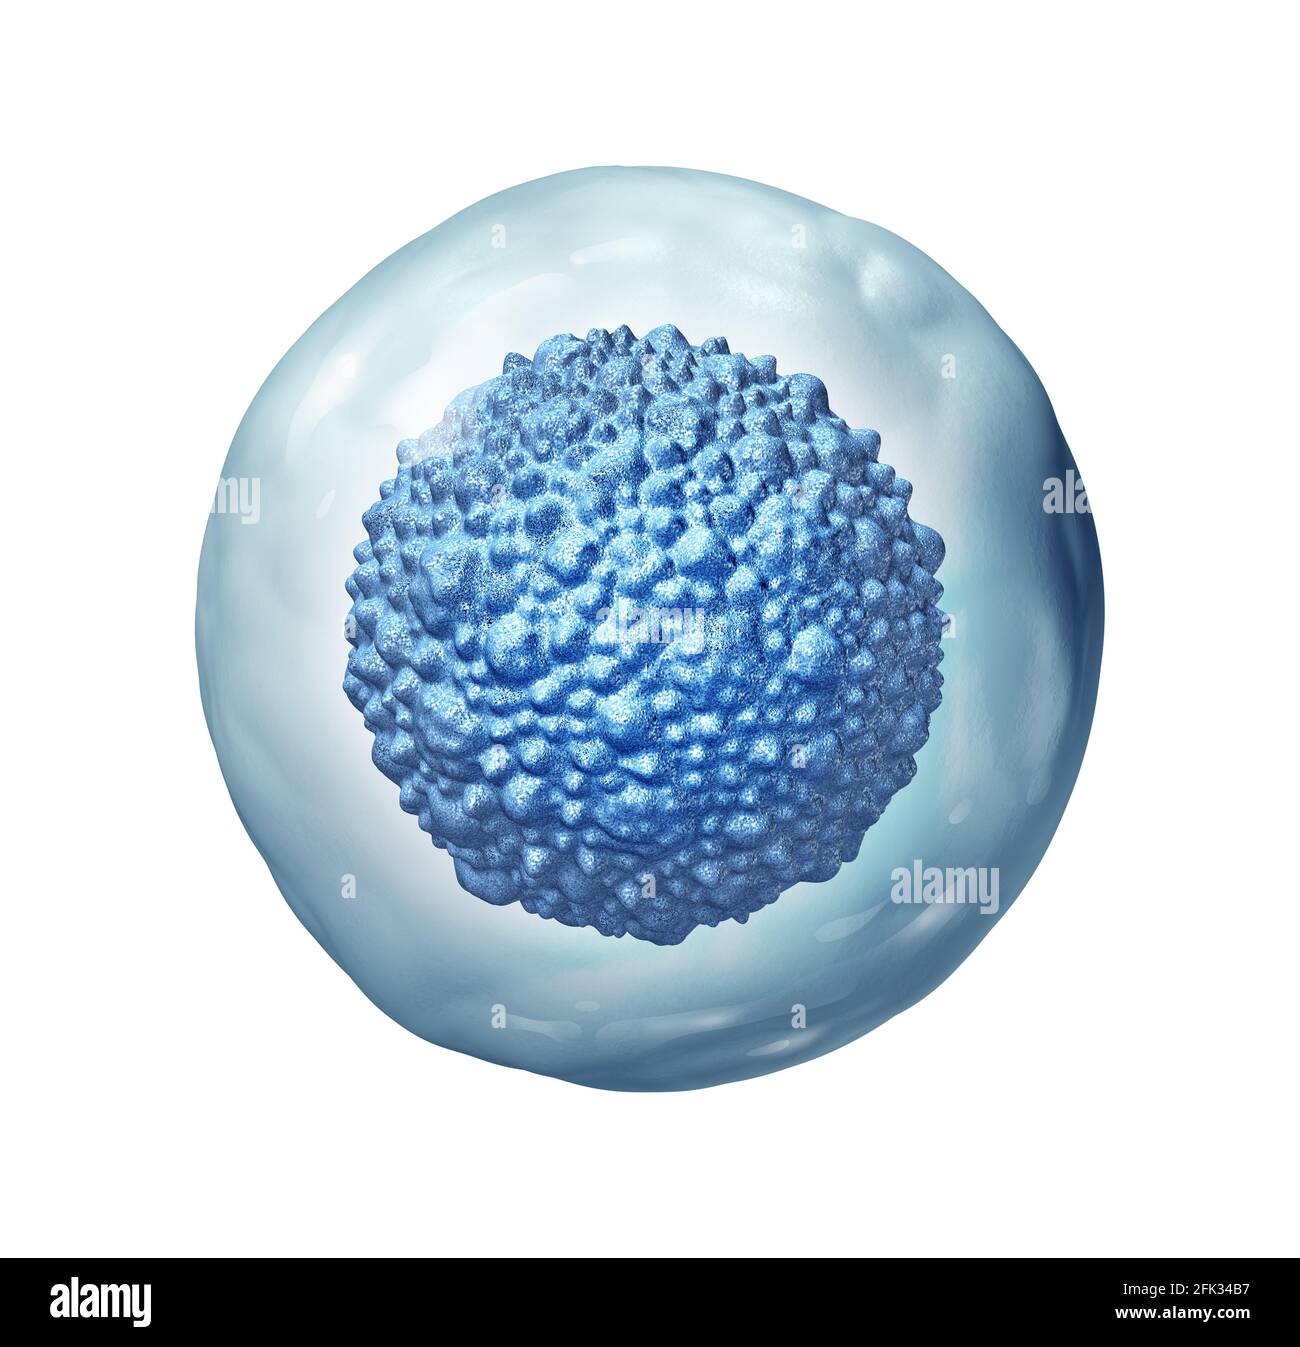 La biología de las células madre como concepto embrionario multicelular u organismo adulto como símbolo de la terapia celular como ilustración de 3D. Foto de stock